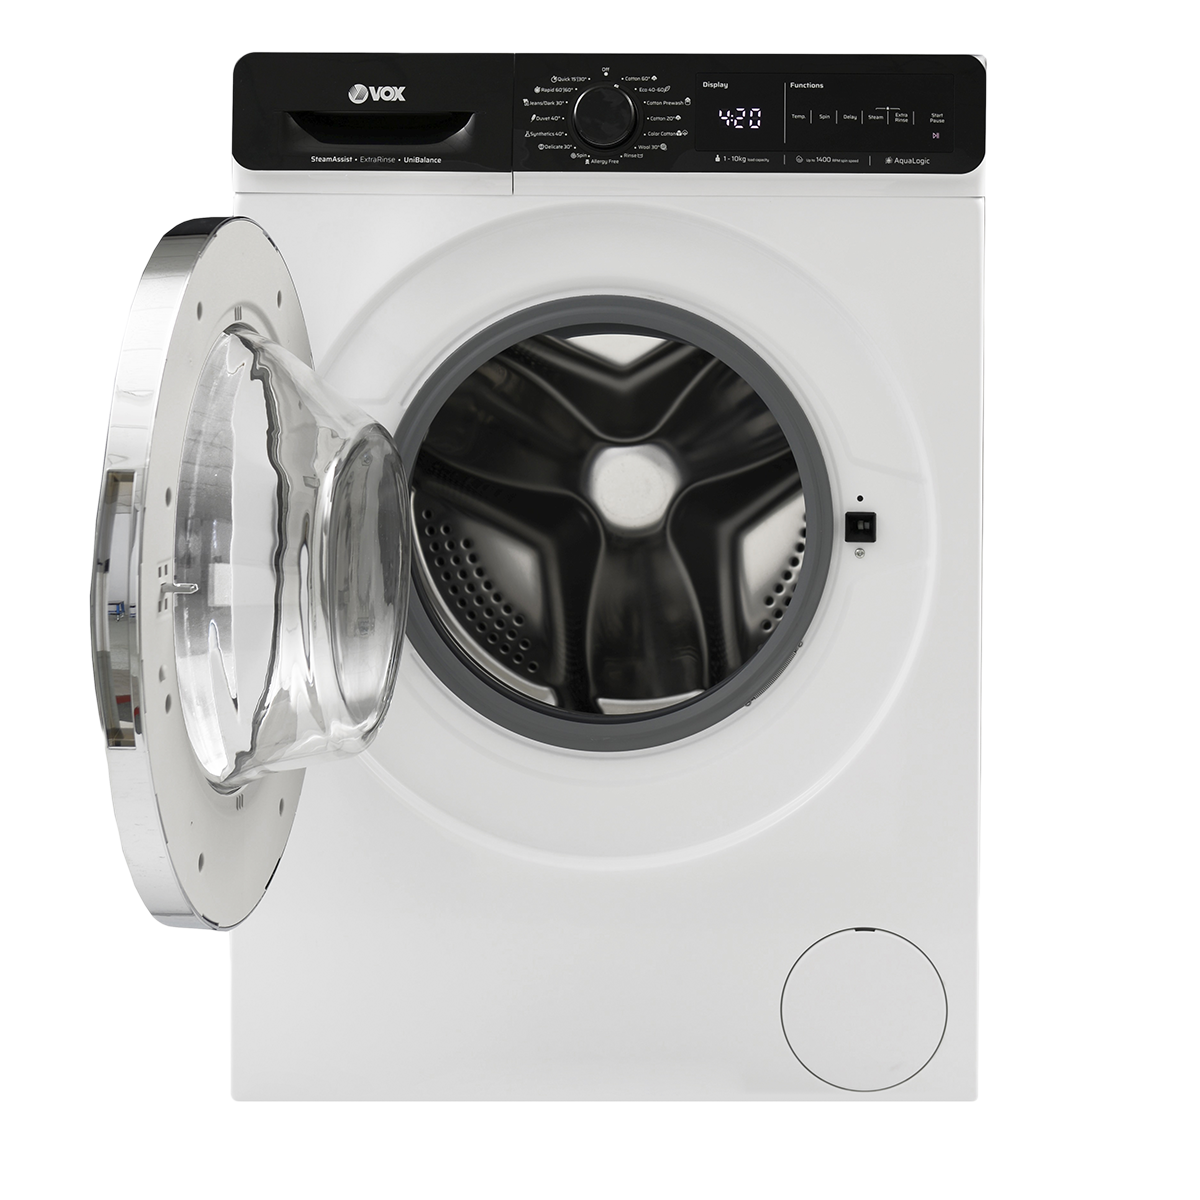 Машина за перење алишта WM1410-SAT2T15D 